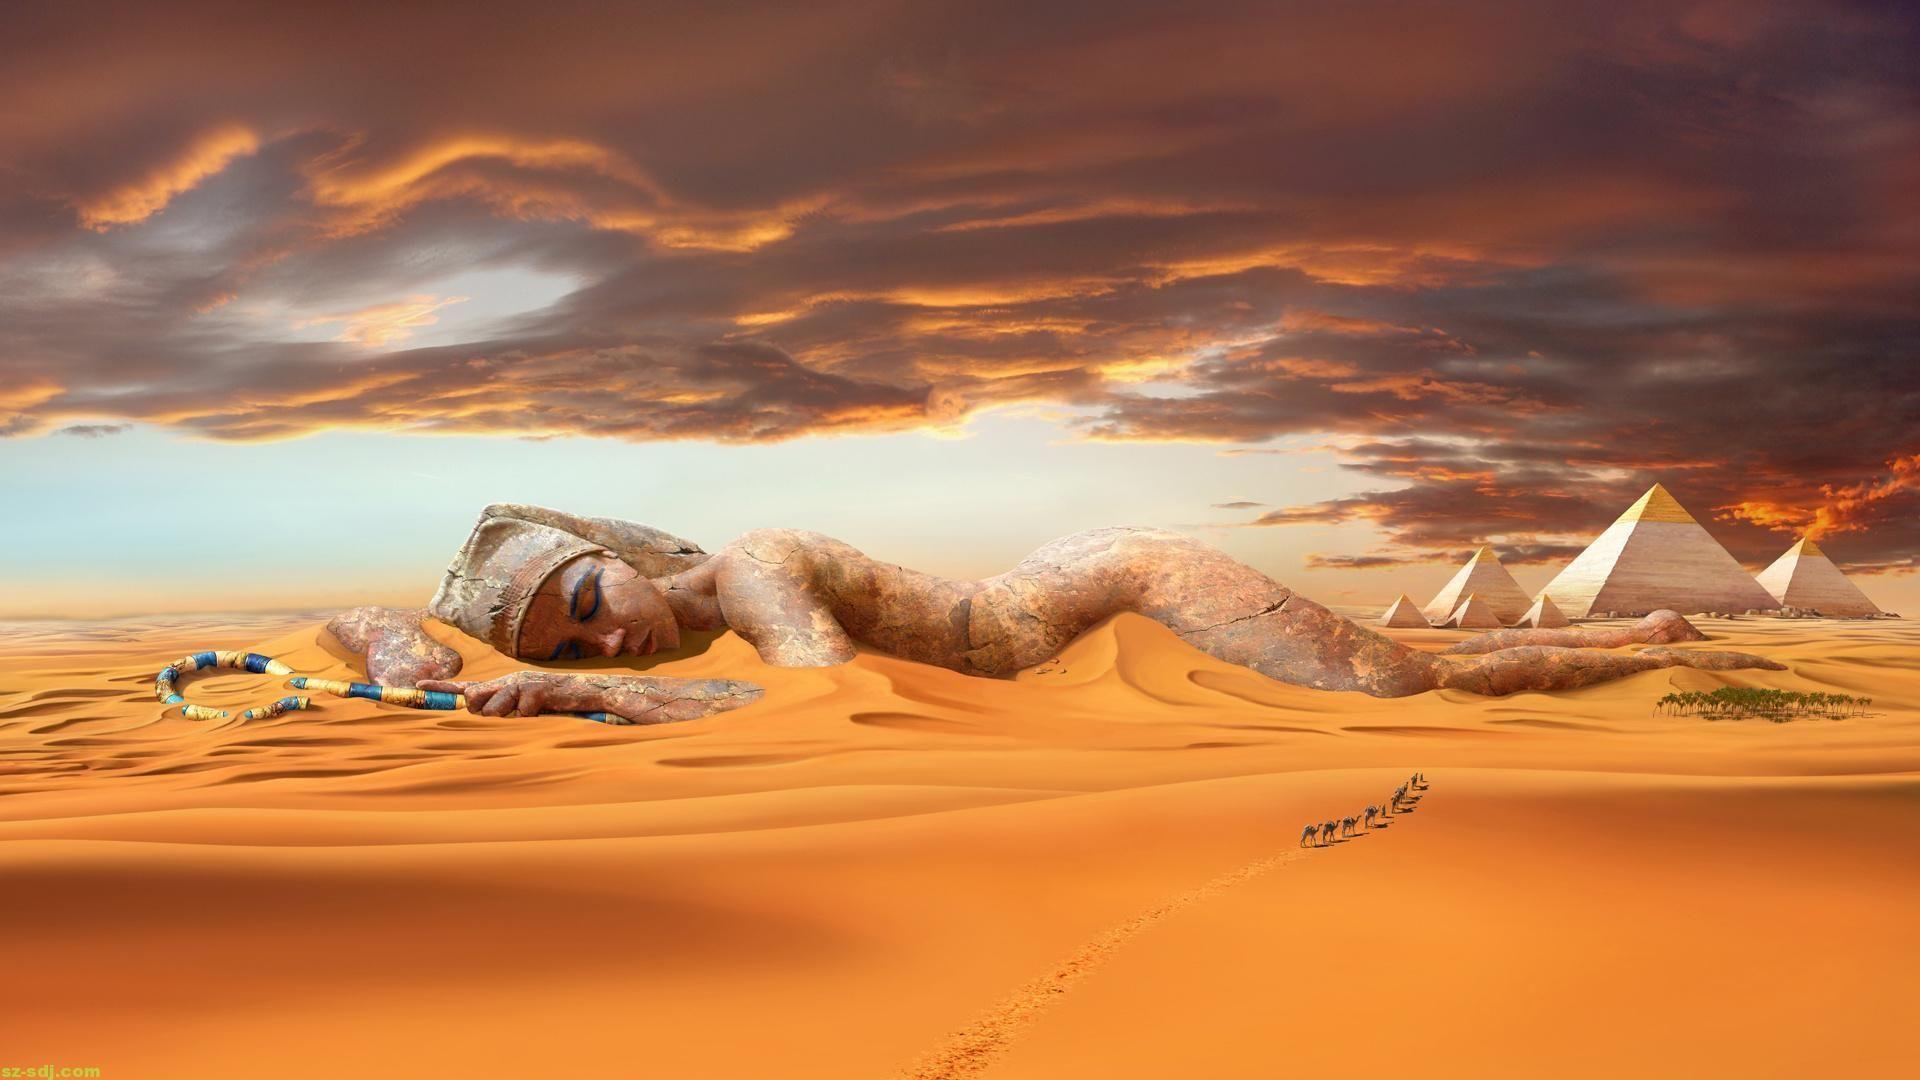 A Desert By Artist Cool Wallpapers